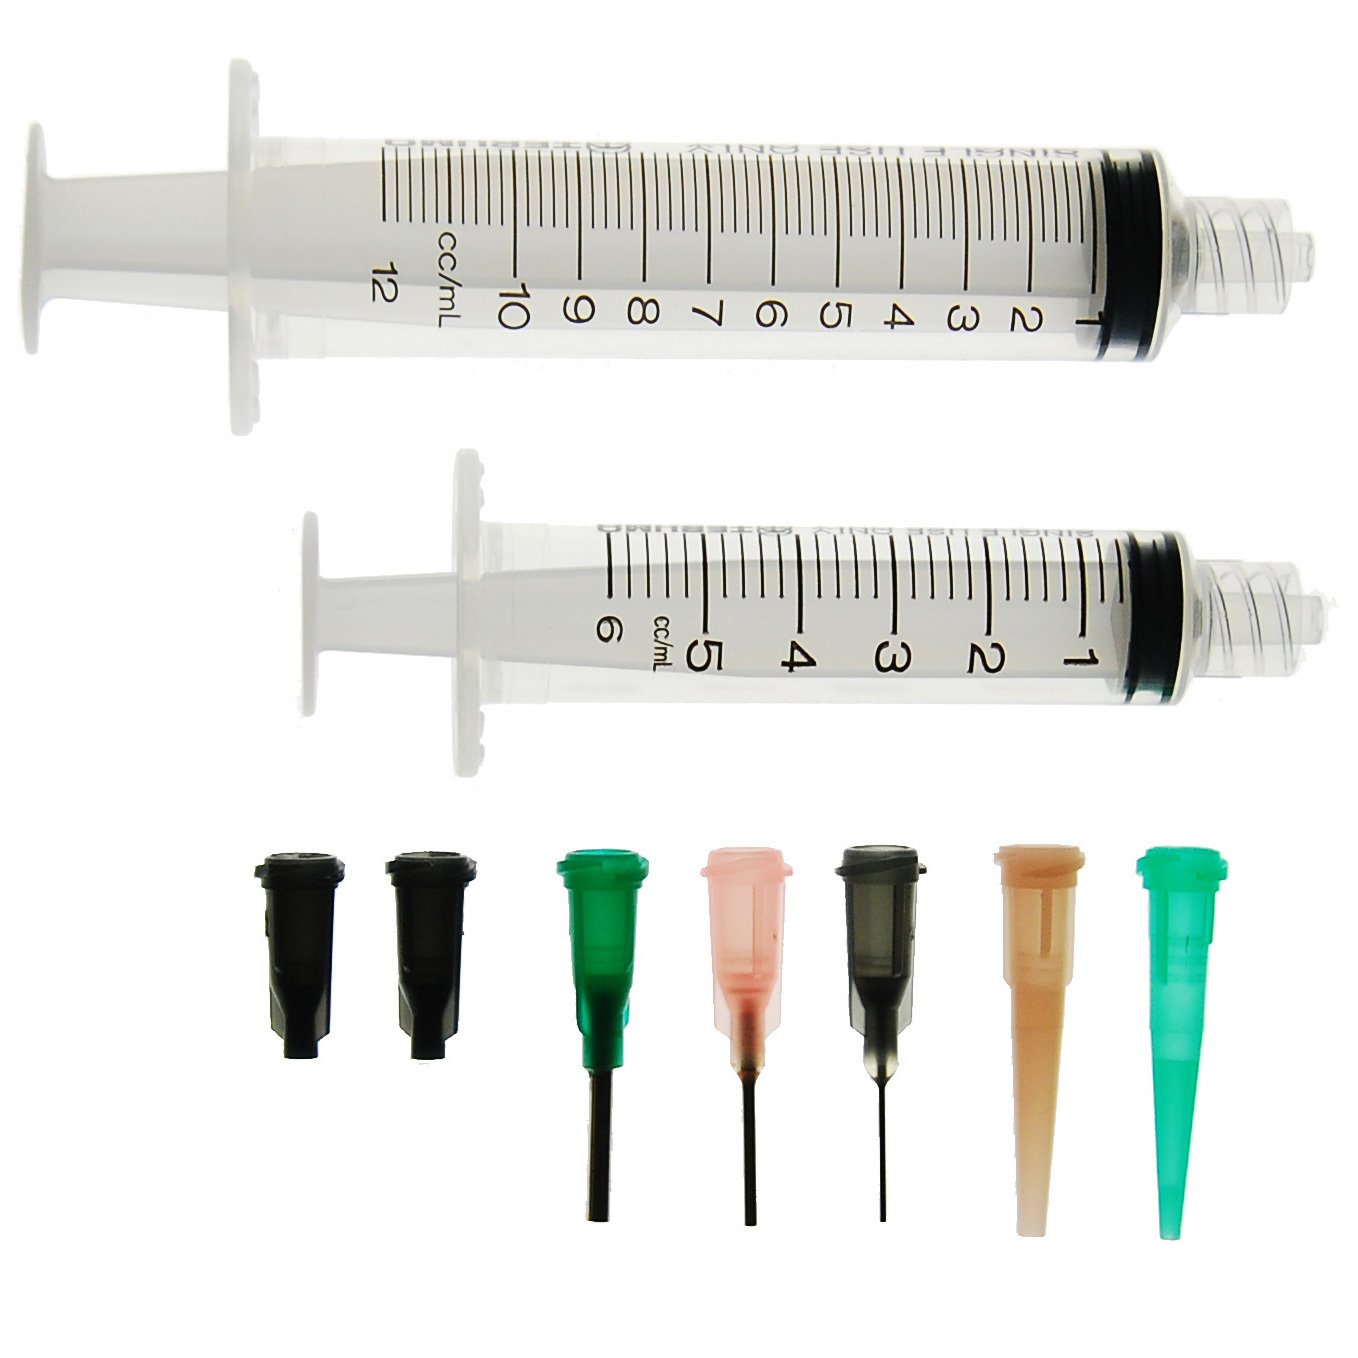 Dispensing Syringe Kit 9 pieces